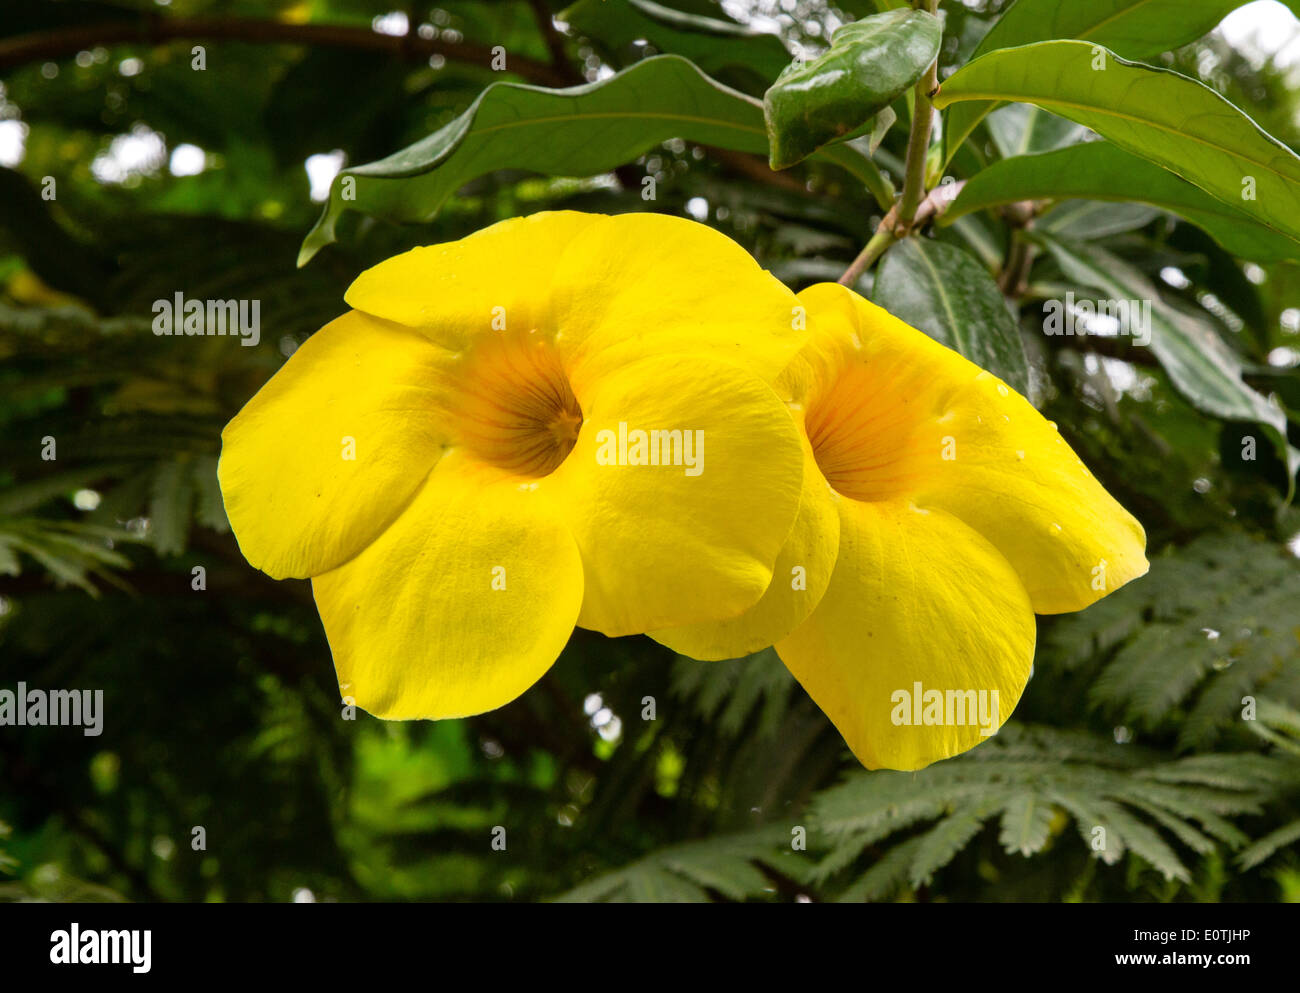 Grandes fleurs en forme de trompette jaune d'un arbuste tropical au Costa Rica Banque D'Images